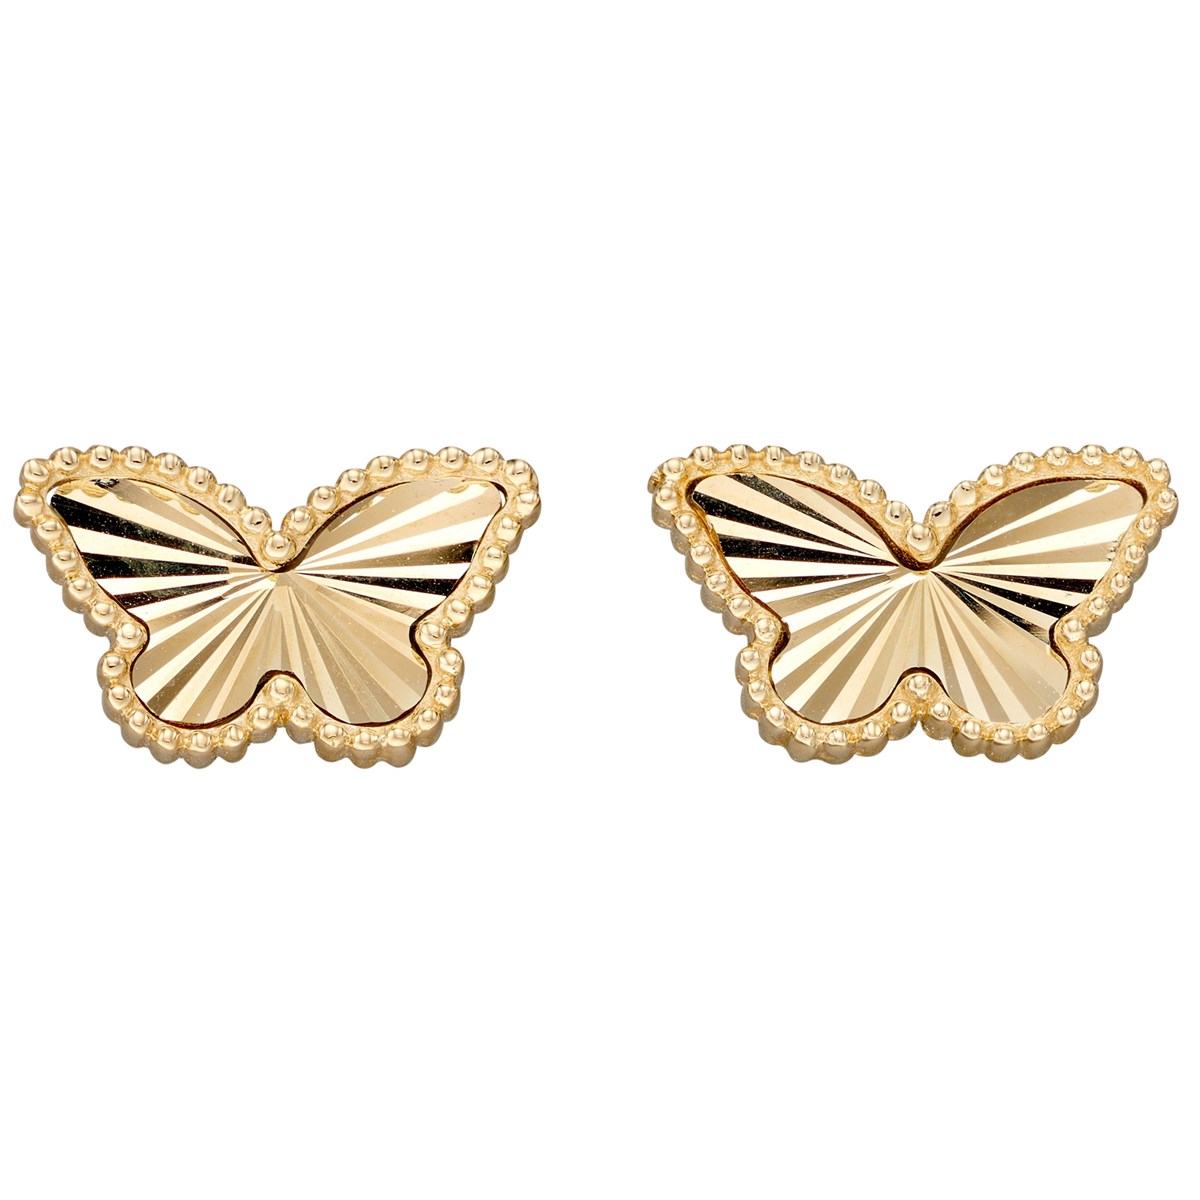 Boucle d'oreille papillon sur or jaune 375/1000